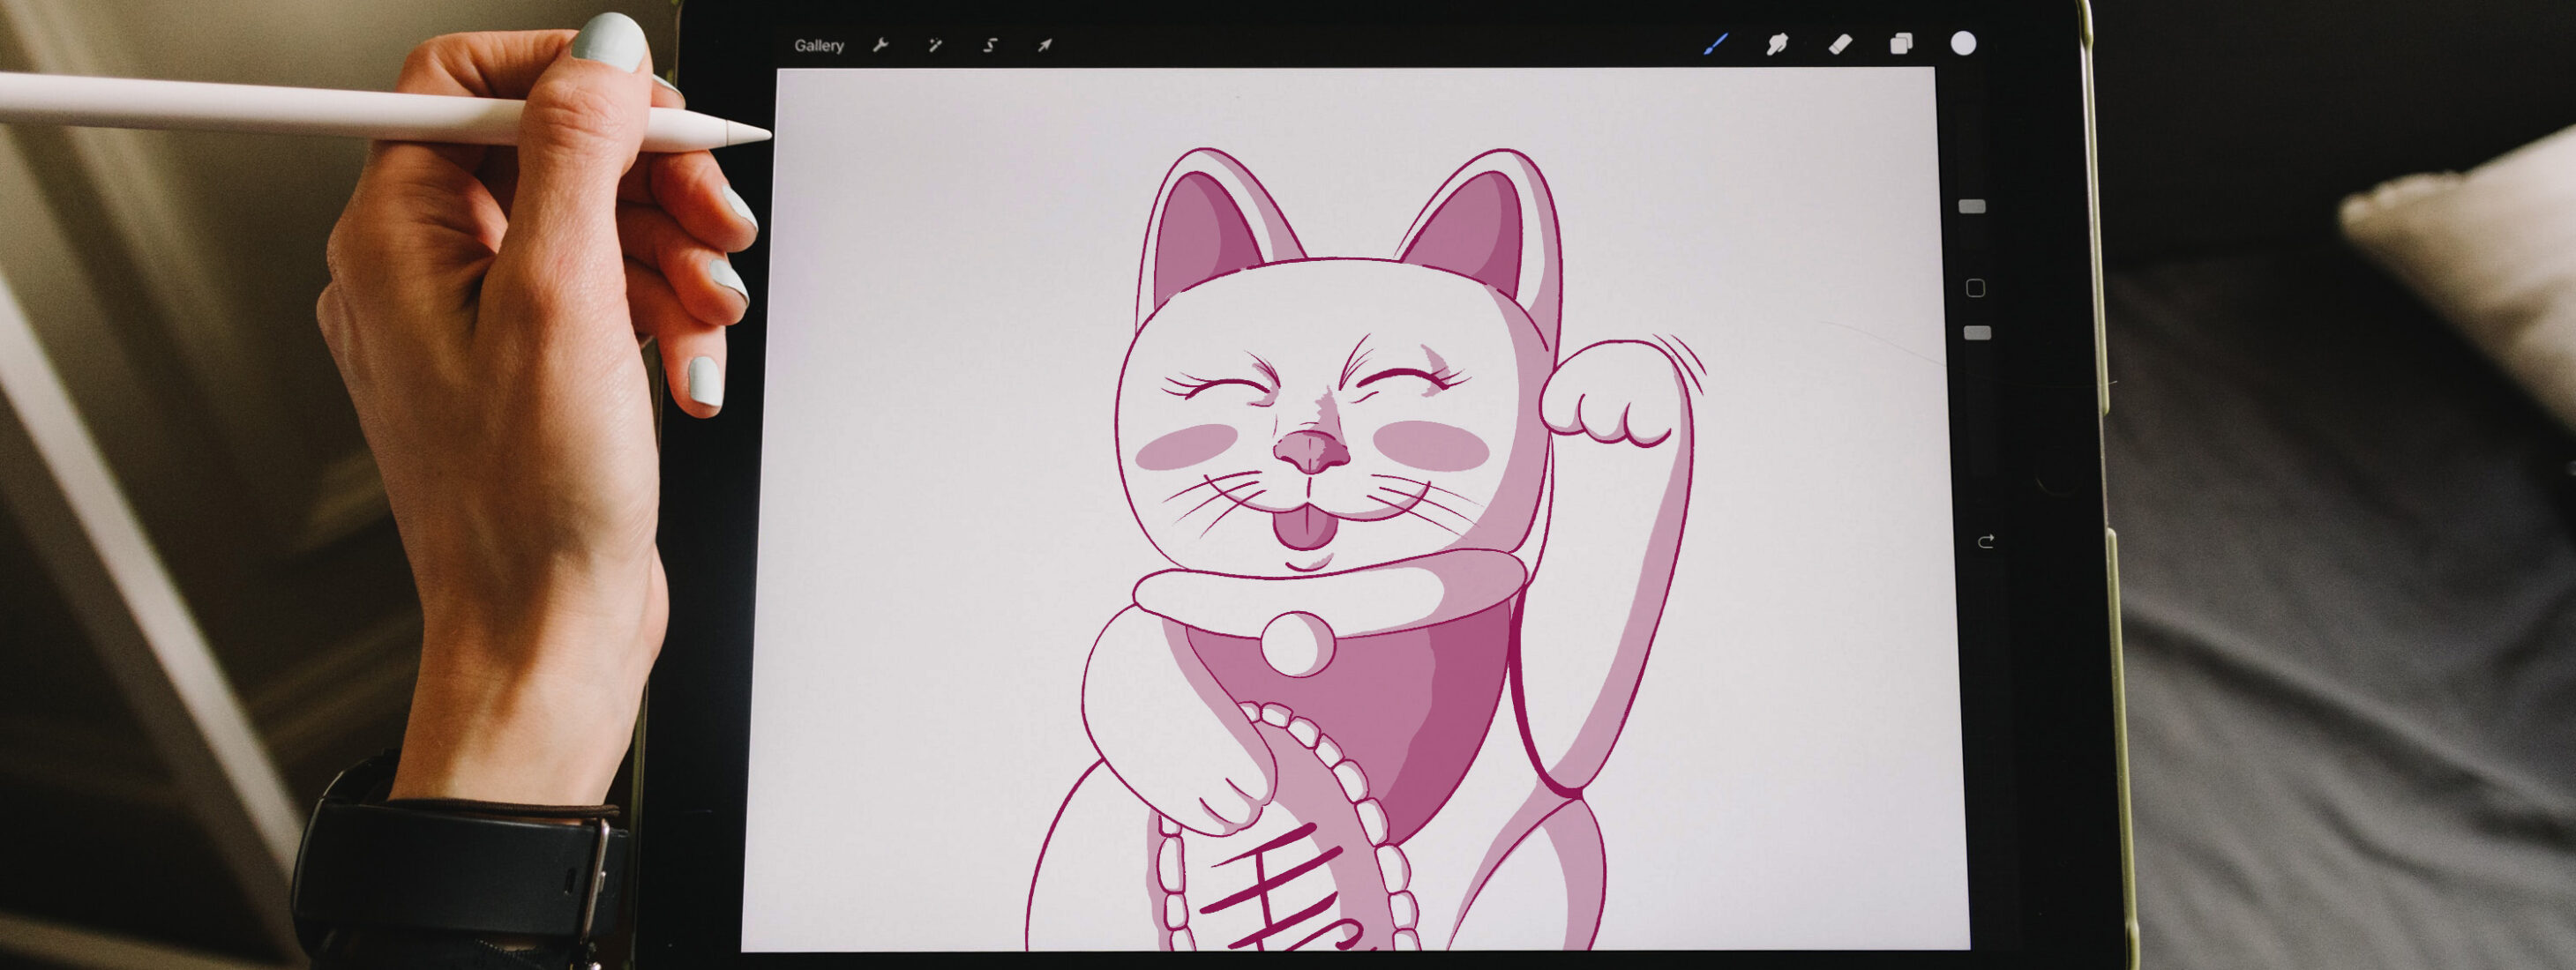 Zeichnung von Philipp Krüger bei Procreate auf einem iPad: Katze mit Winkearm, Frau hält Applepencil in der Hand